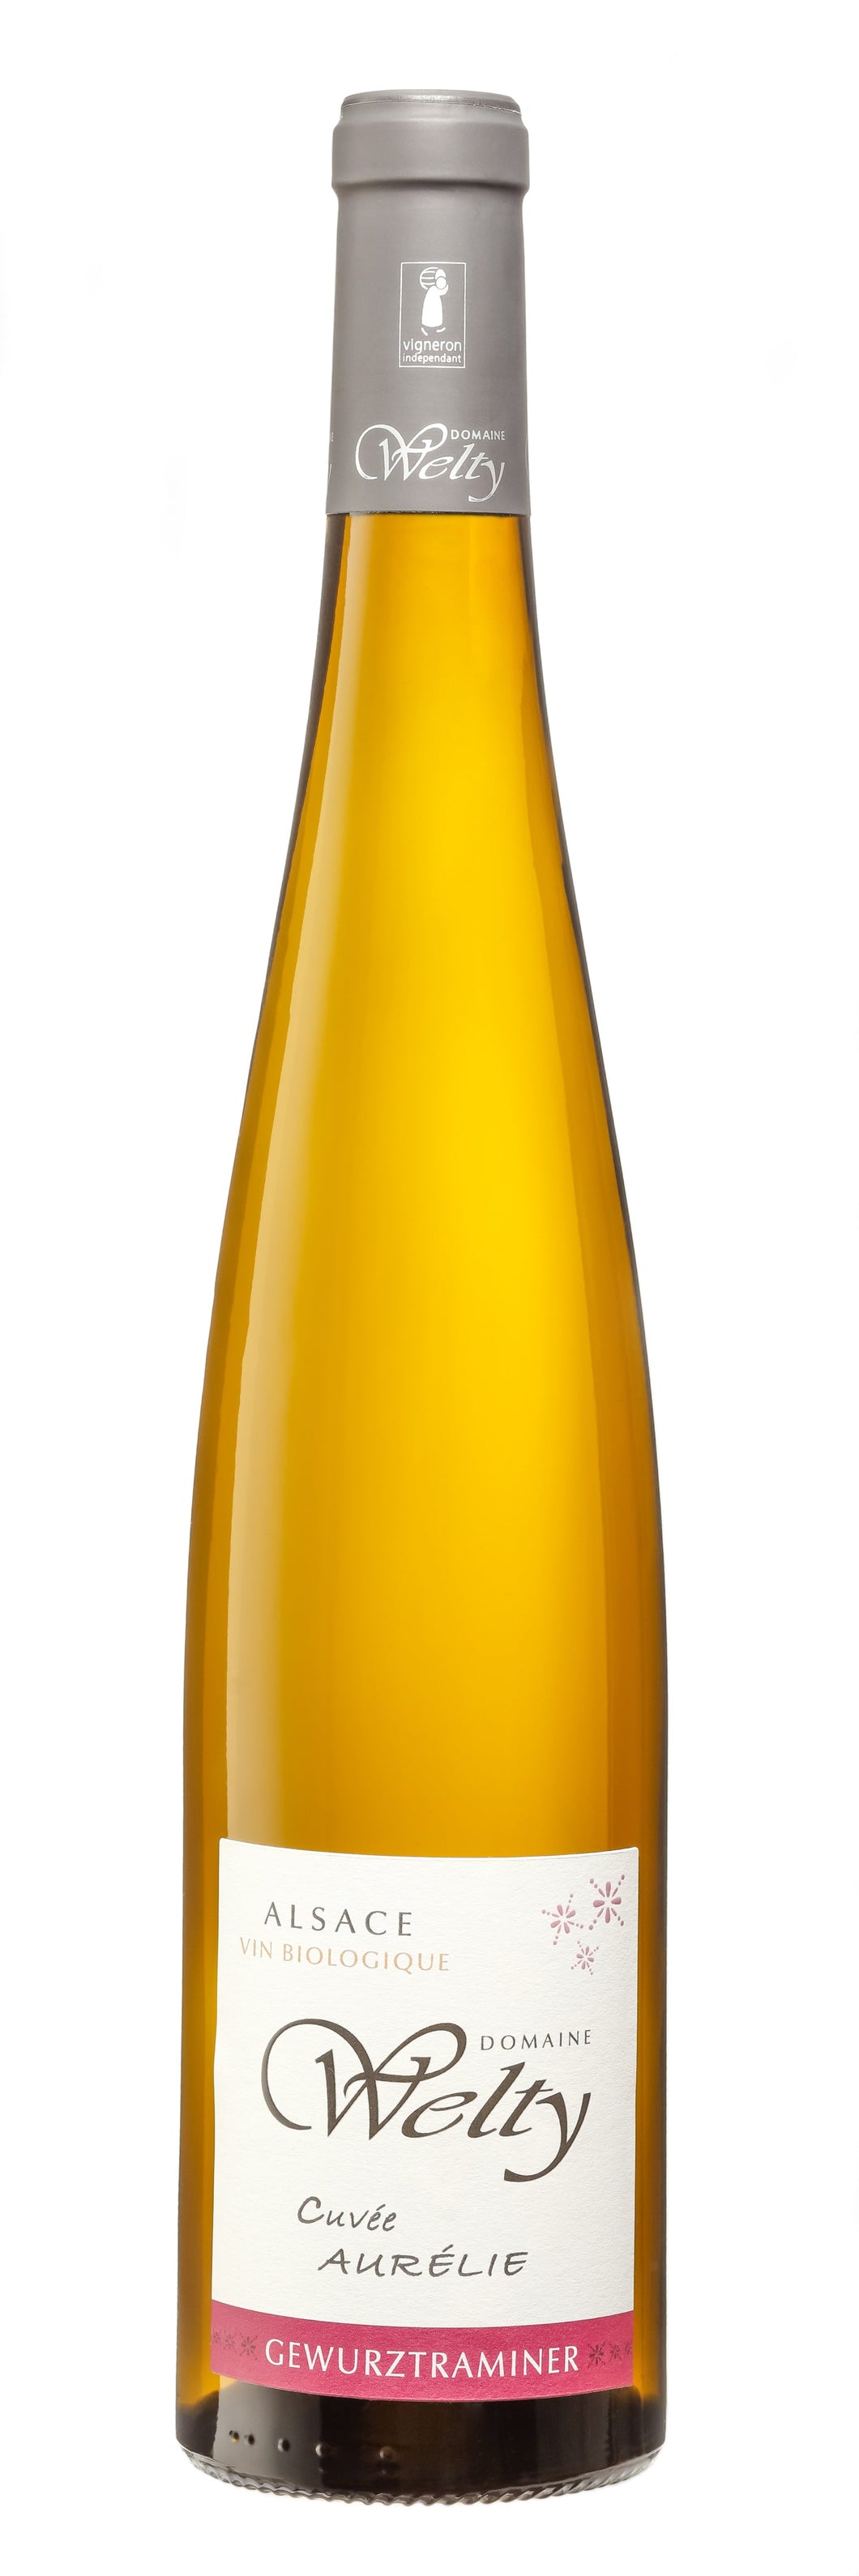 Gewurztraminer Cuvée Aurélie 2019 Vin Biologique